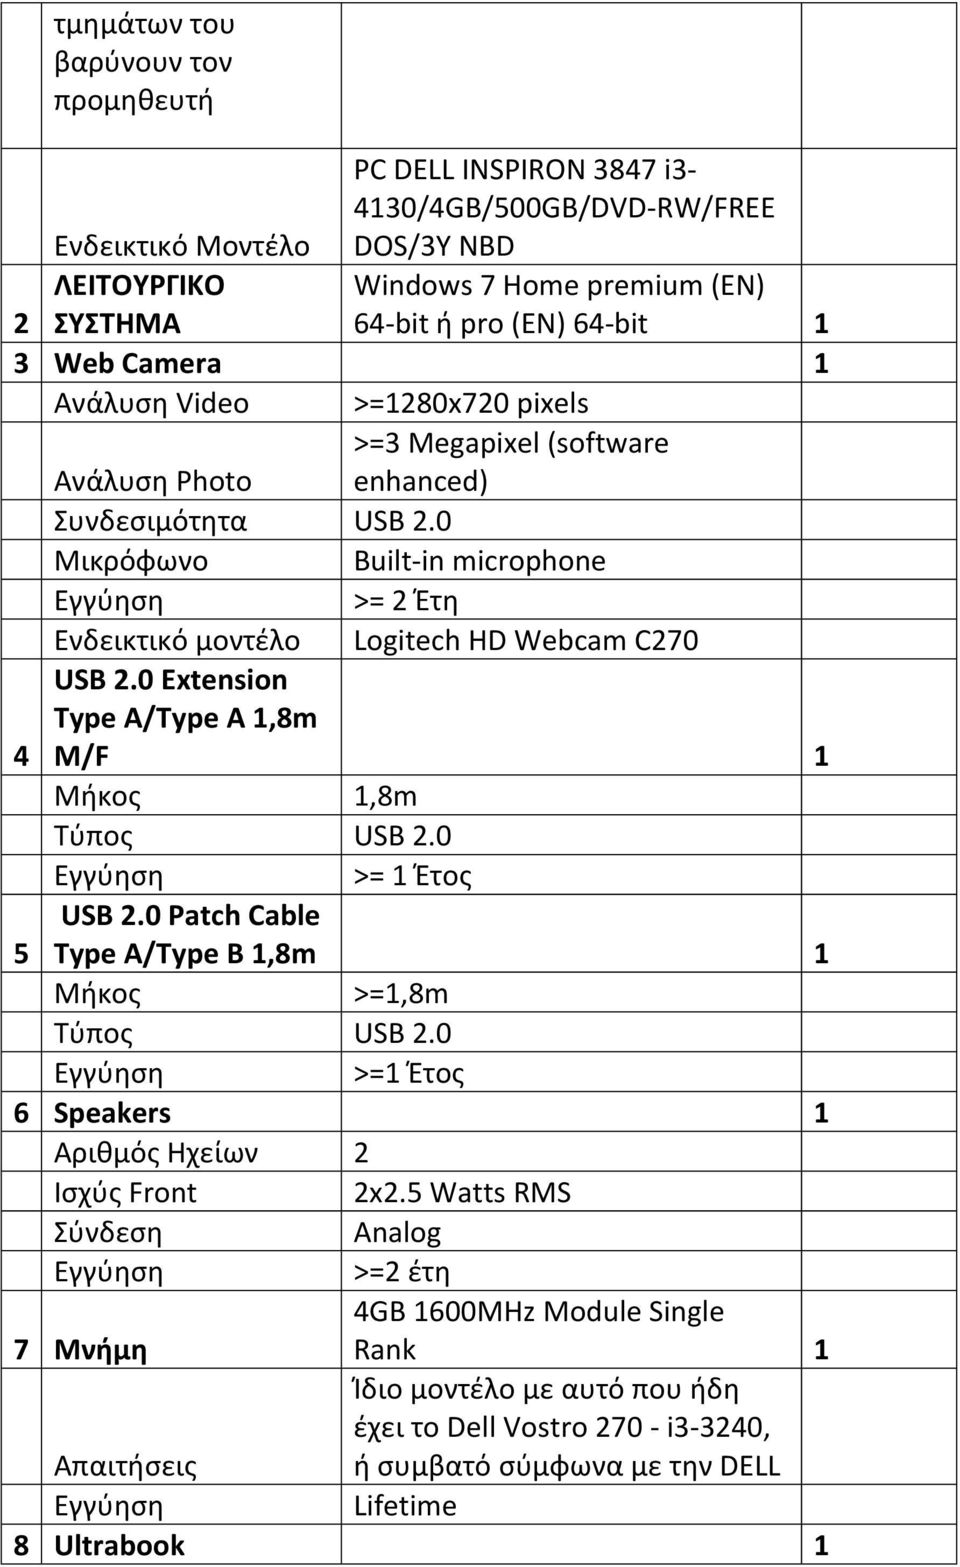 0 Μικρόφωνο Built-in microphone Εγγύηση >= 2 Έτη Ενδεικτικό μοντέλο Logitech HD Webcam C270 4 USB 2.0 Extension Type A/Type A 1,8m M/F 1 Μήκος 1,8m Τύπος USB 2.0 Εγγύηση >= 1 Έτος 5 USB 2.